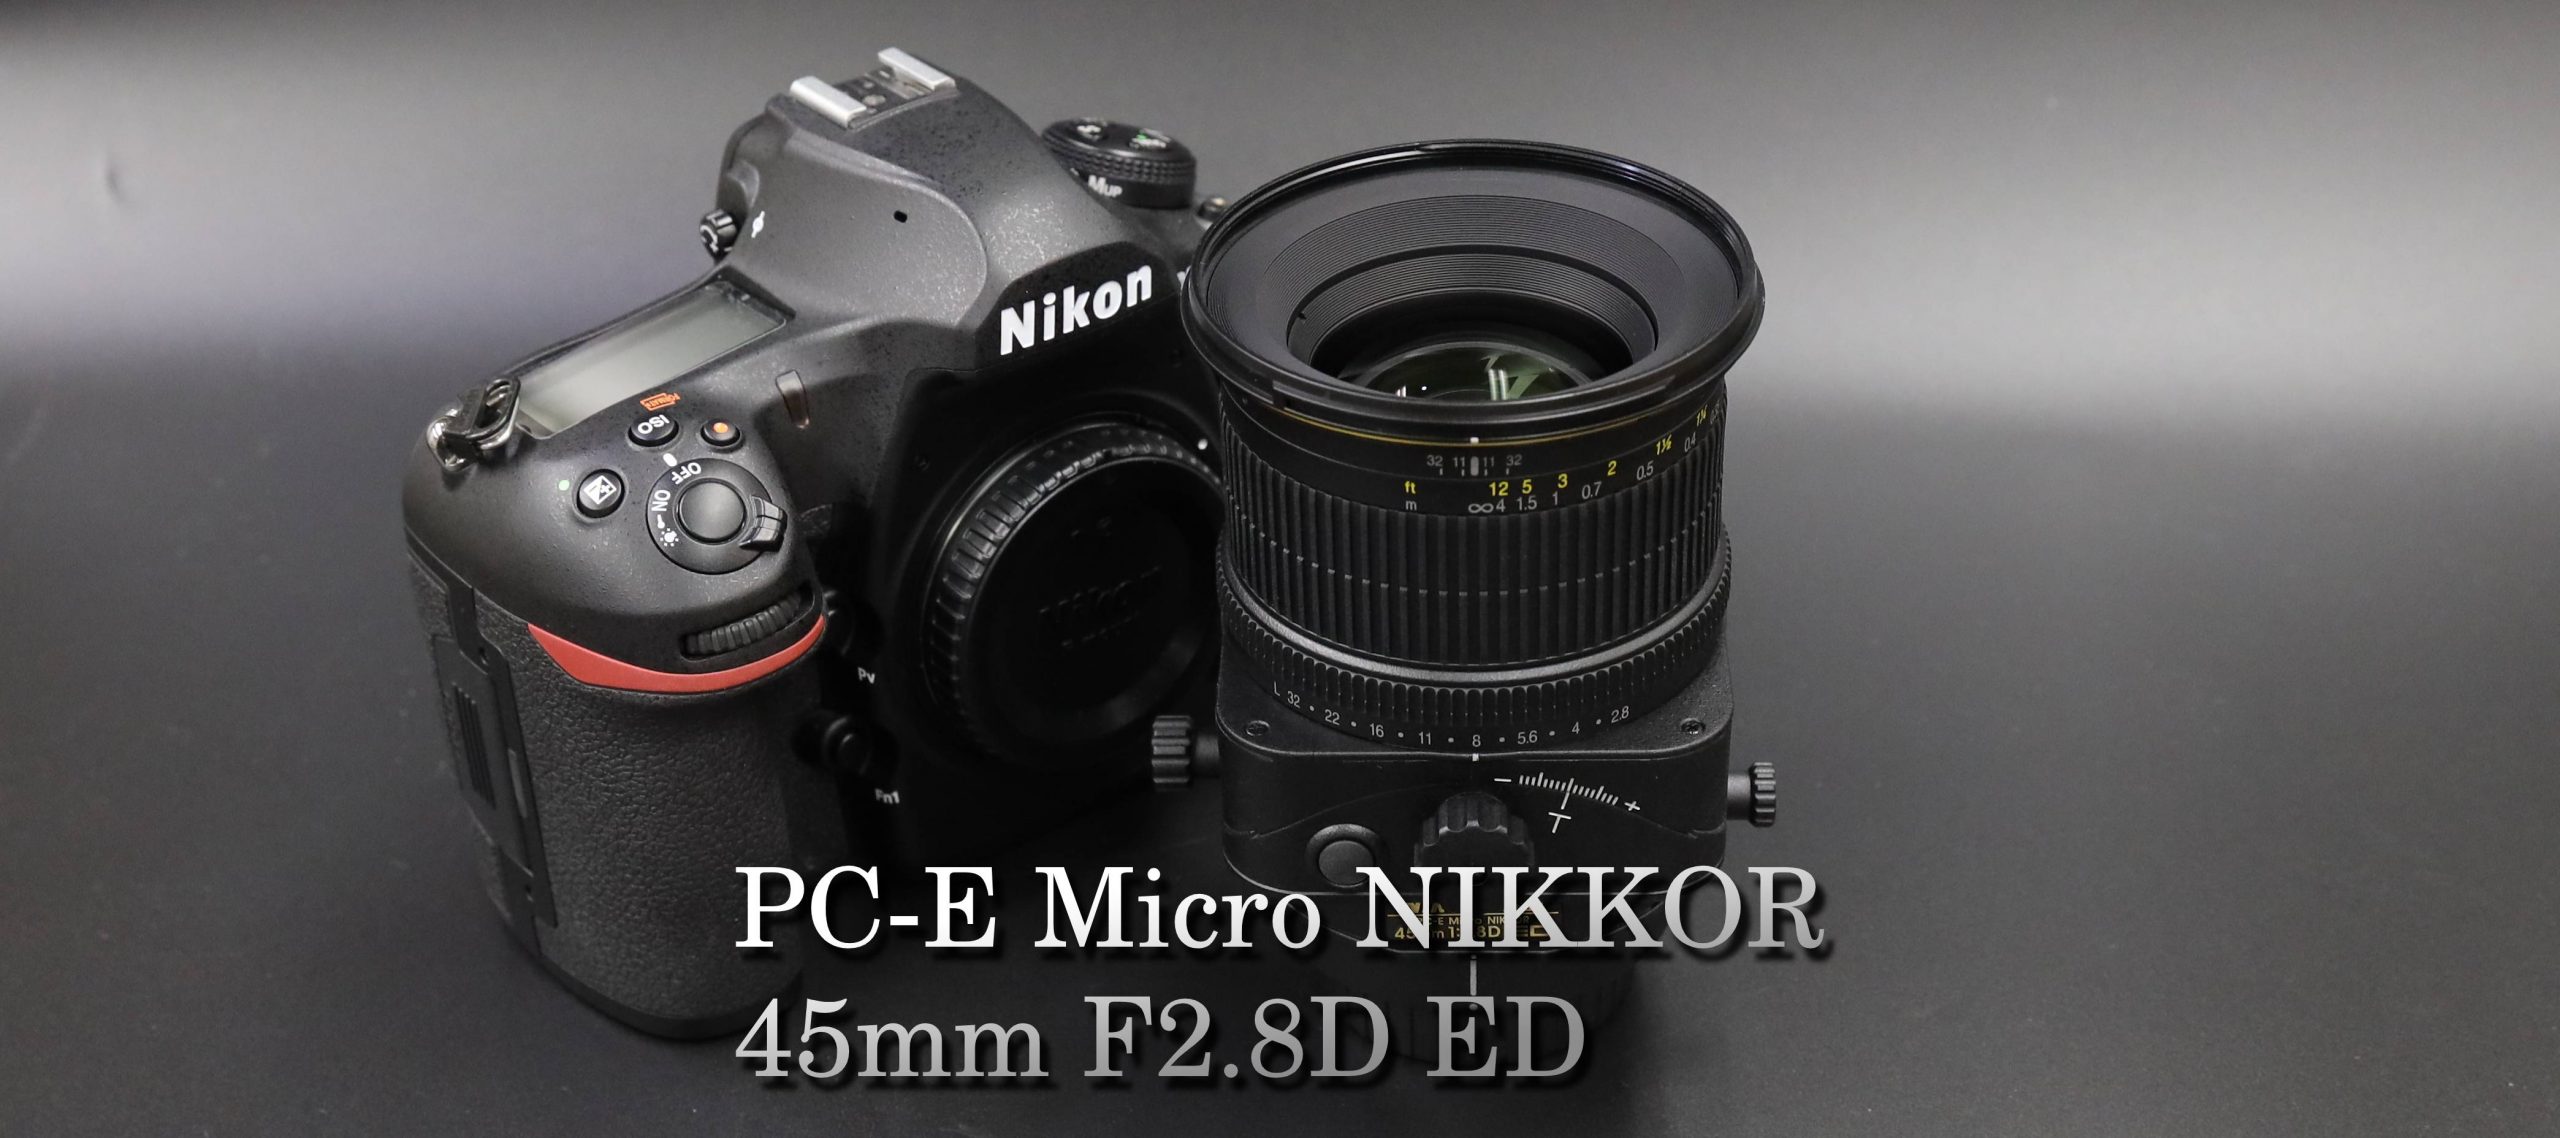 カメラ レンズ(単焦点) 好機到来】PC-E Micro NIKKOR 45mm F2.8D EDを使って | THE MAP TIMES